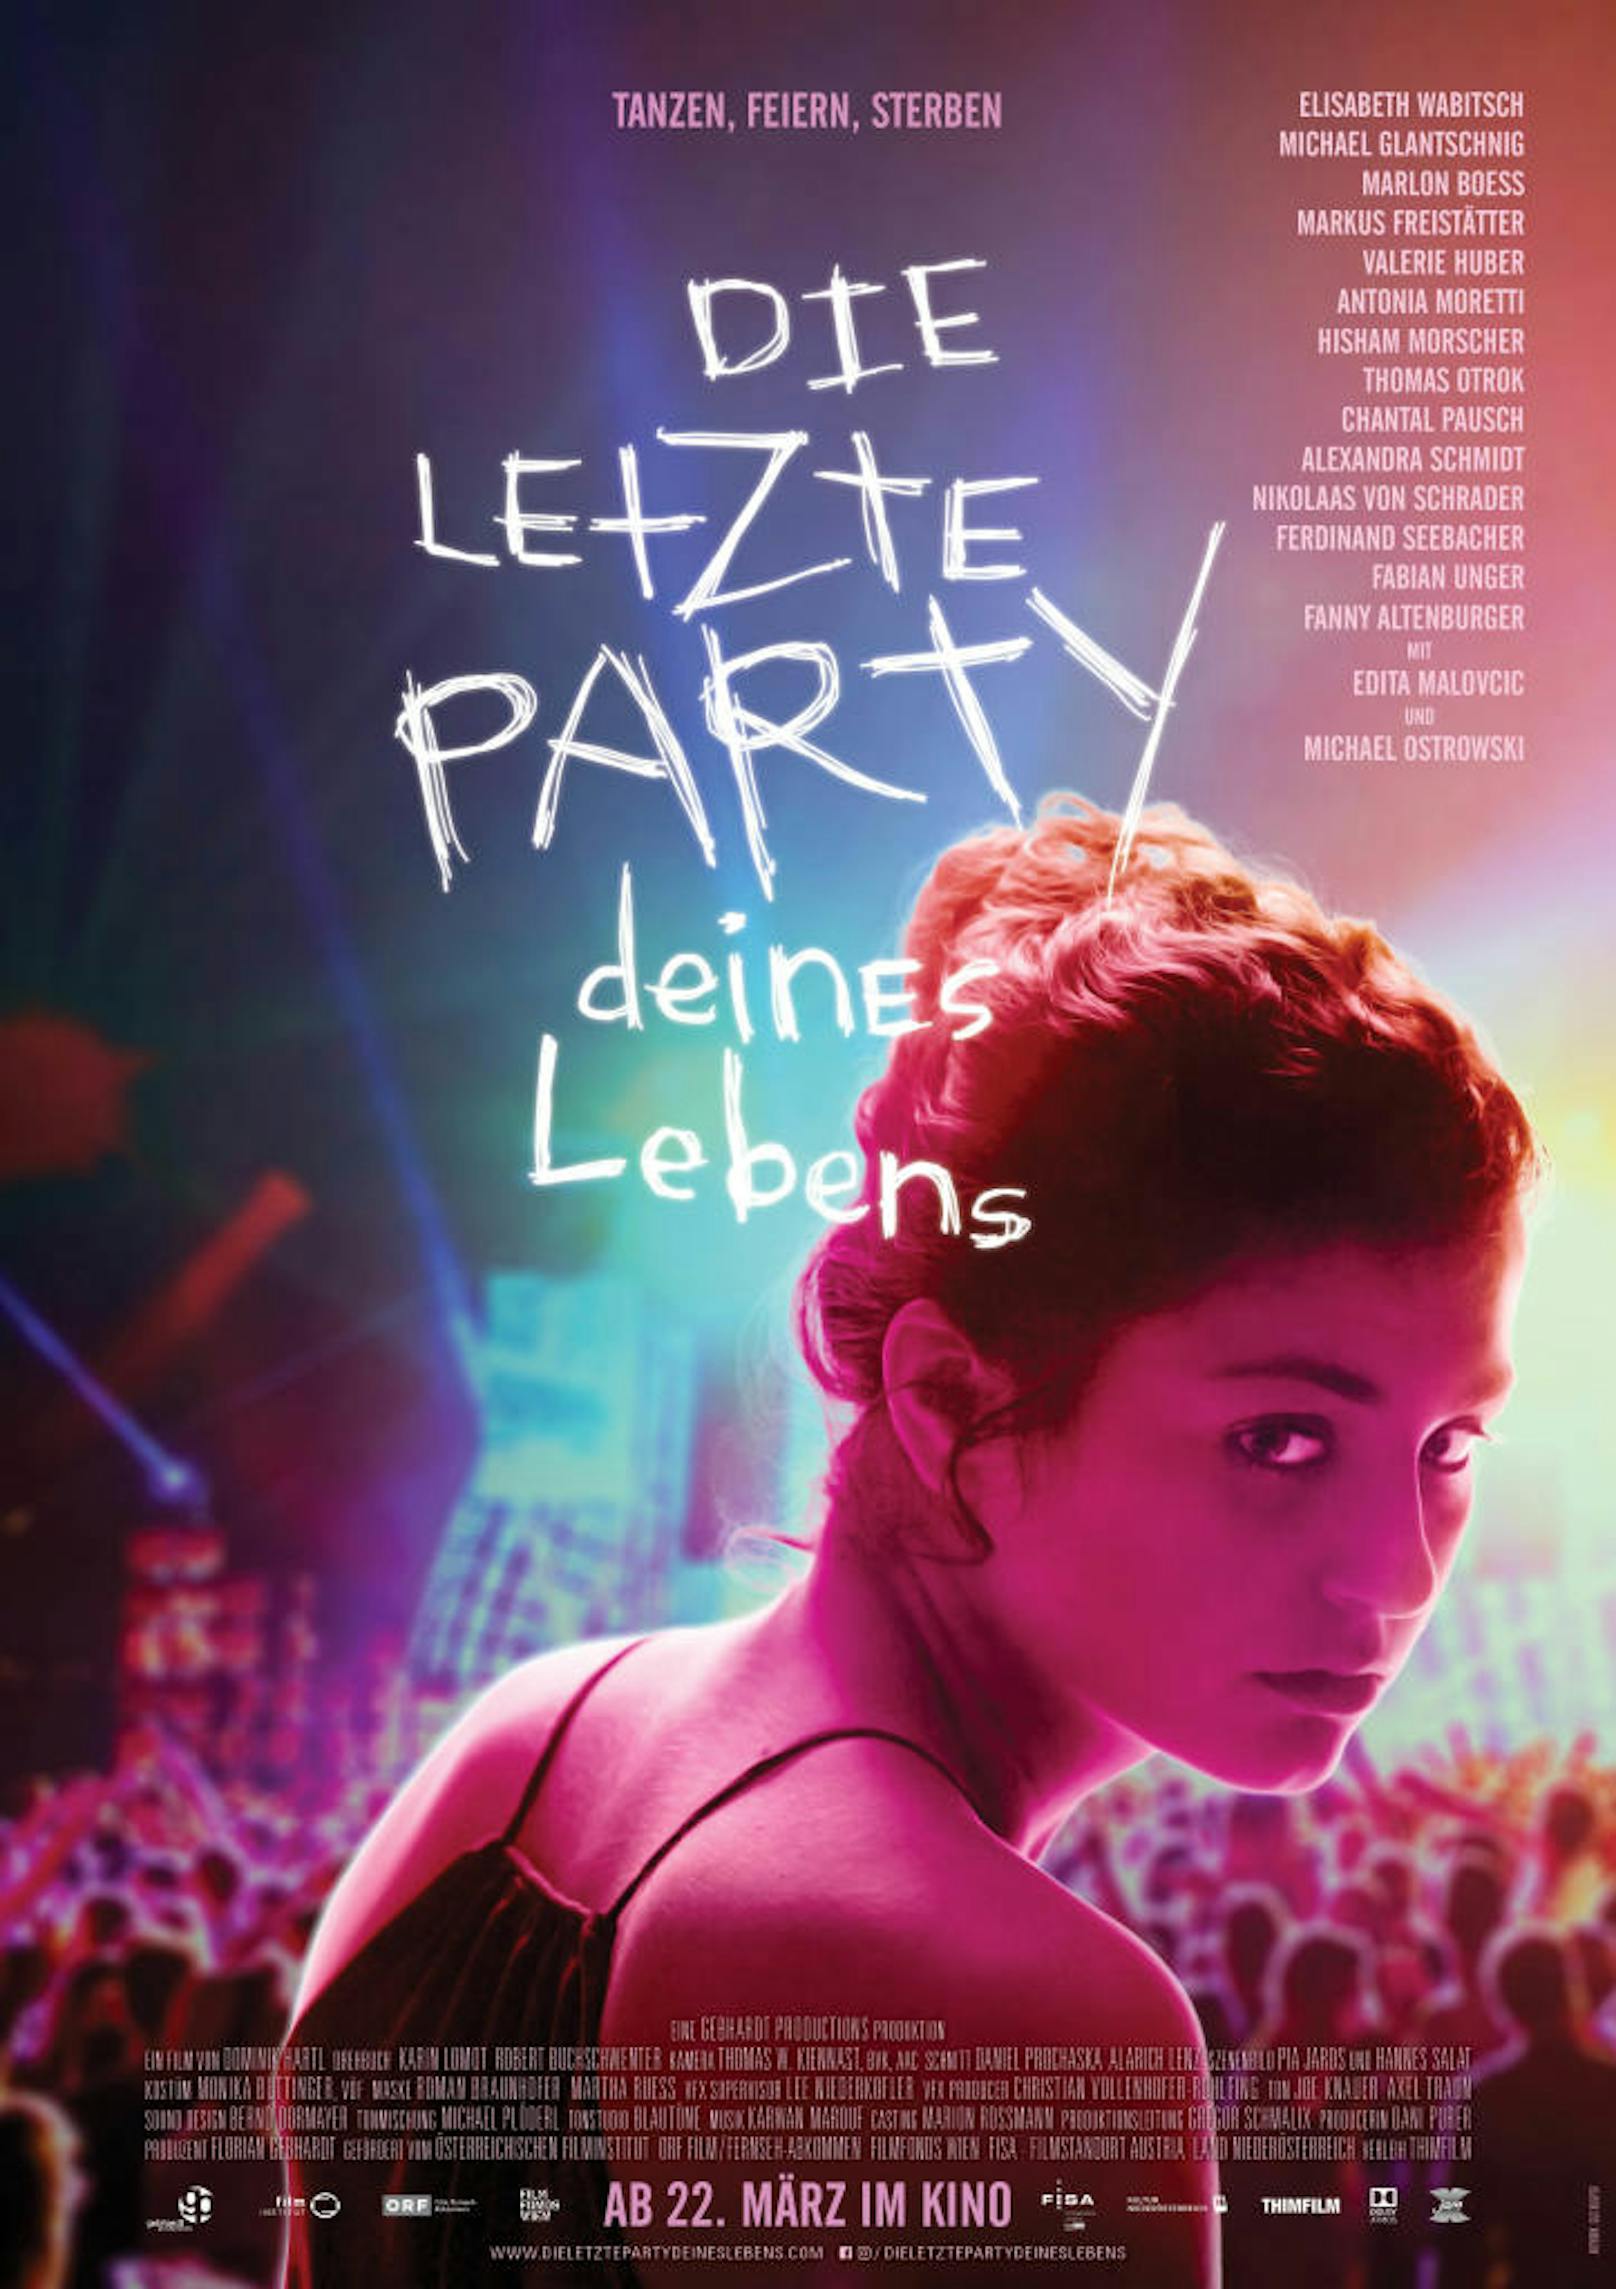 Filmplakat von "Die letzte Party deines Lebens".